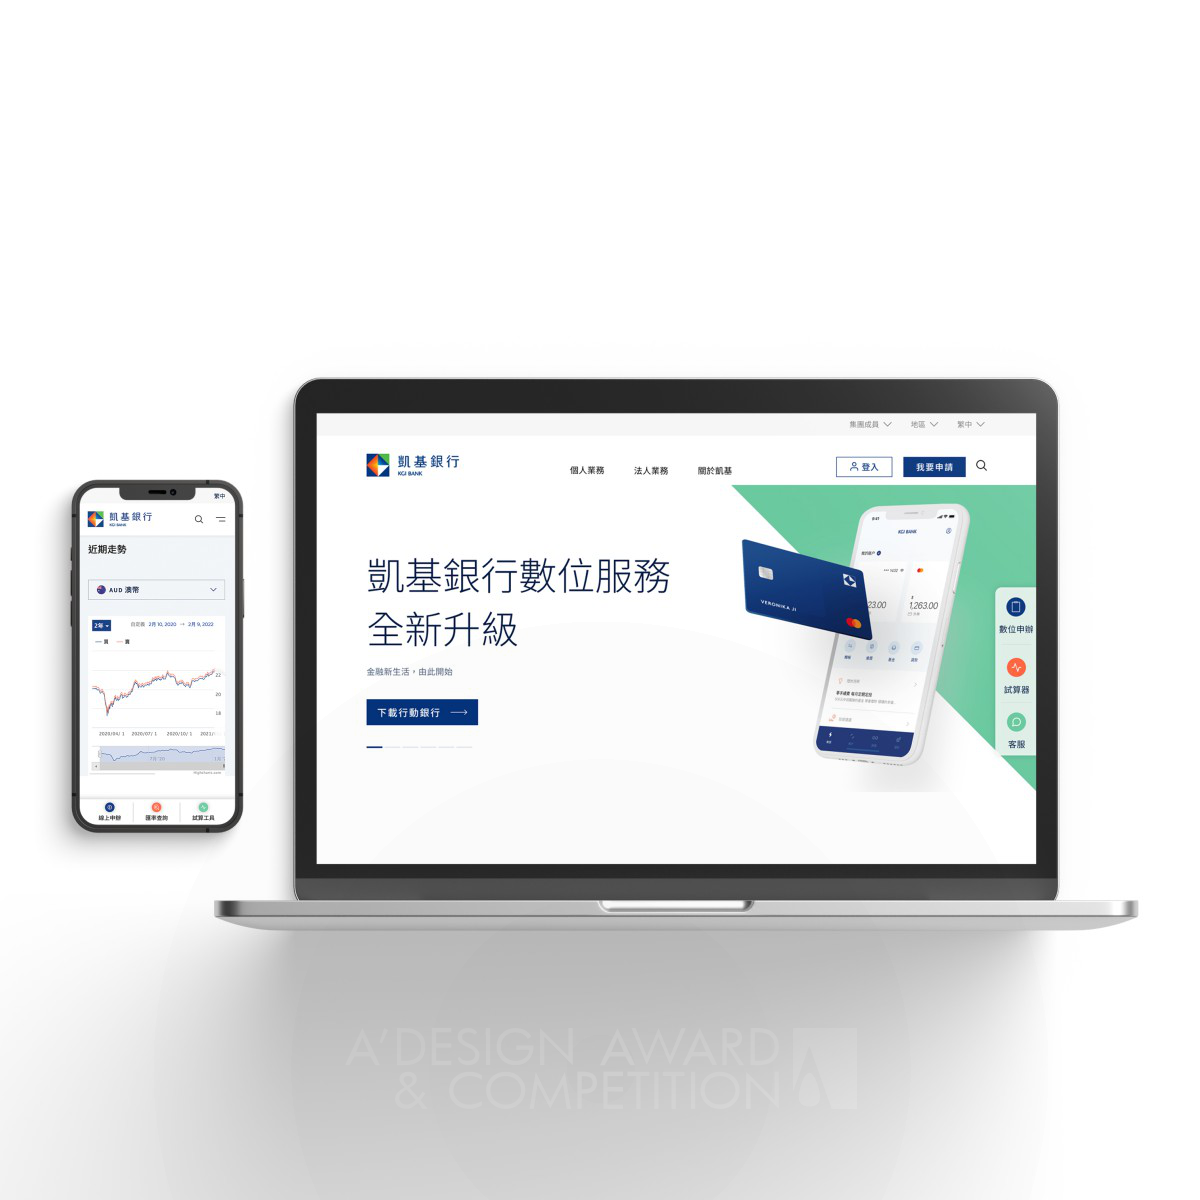 Переосмысление банковского веб-сайта: KGI Bank от Frog Singapore